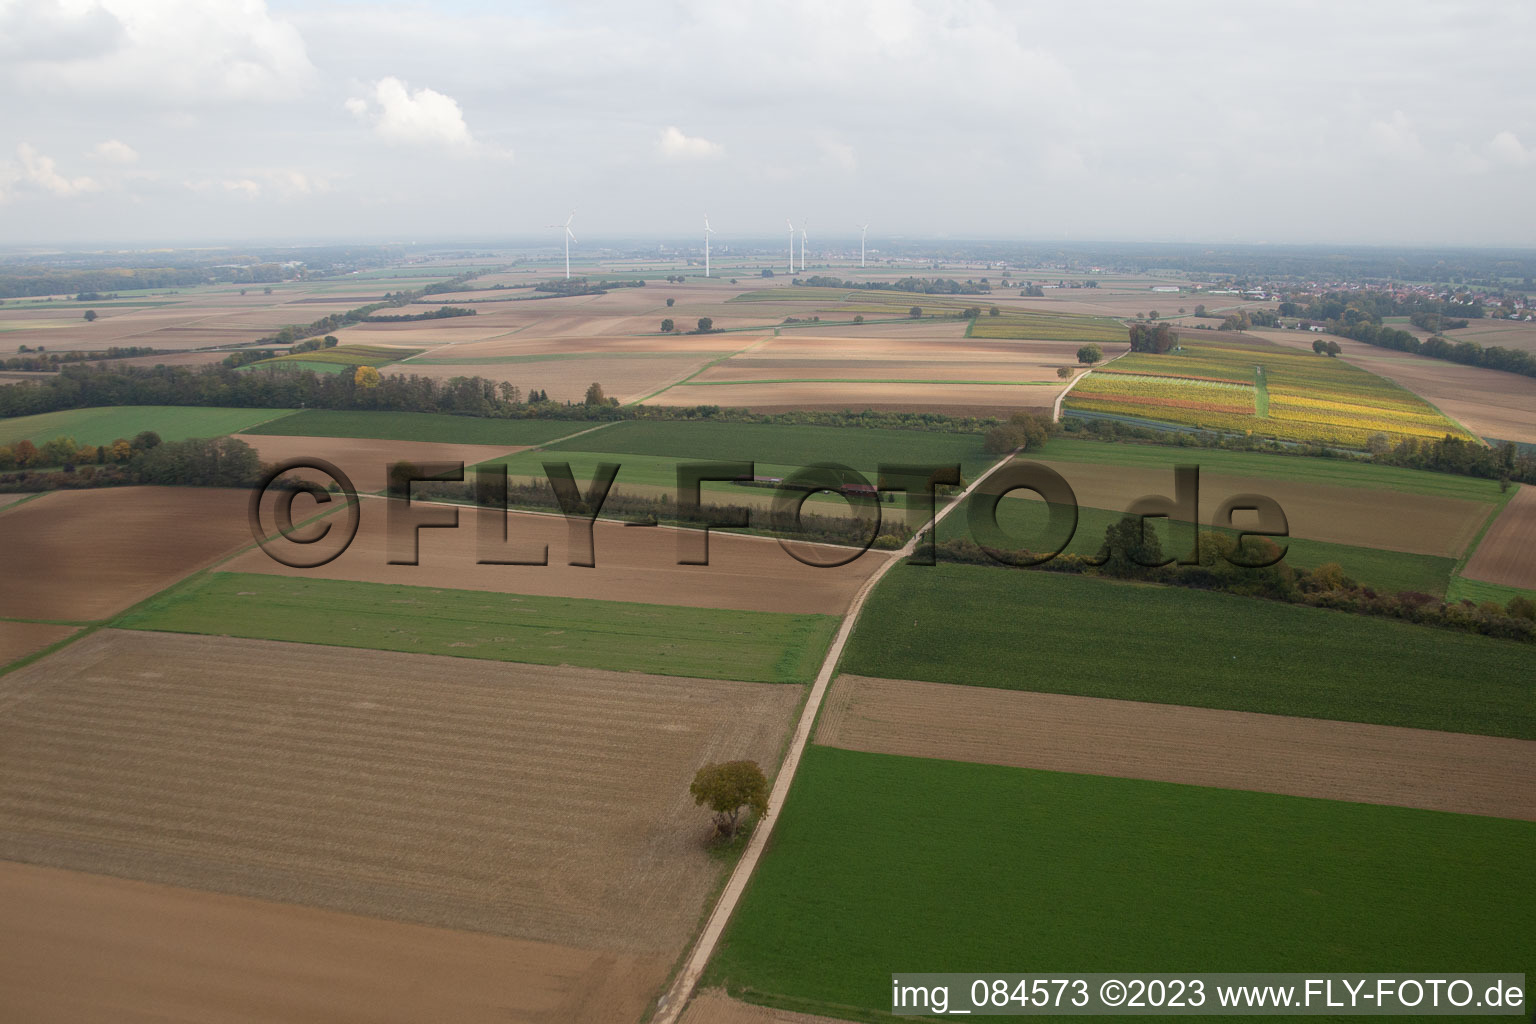 Aérodrome modèle à Freckenfeld dans le département Rhénanie-Palatinat, Allemagne depuis l'avion